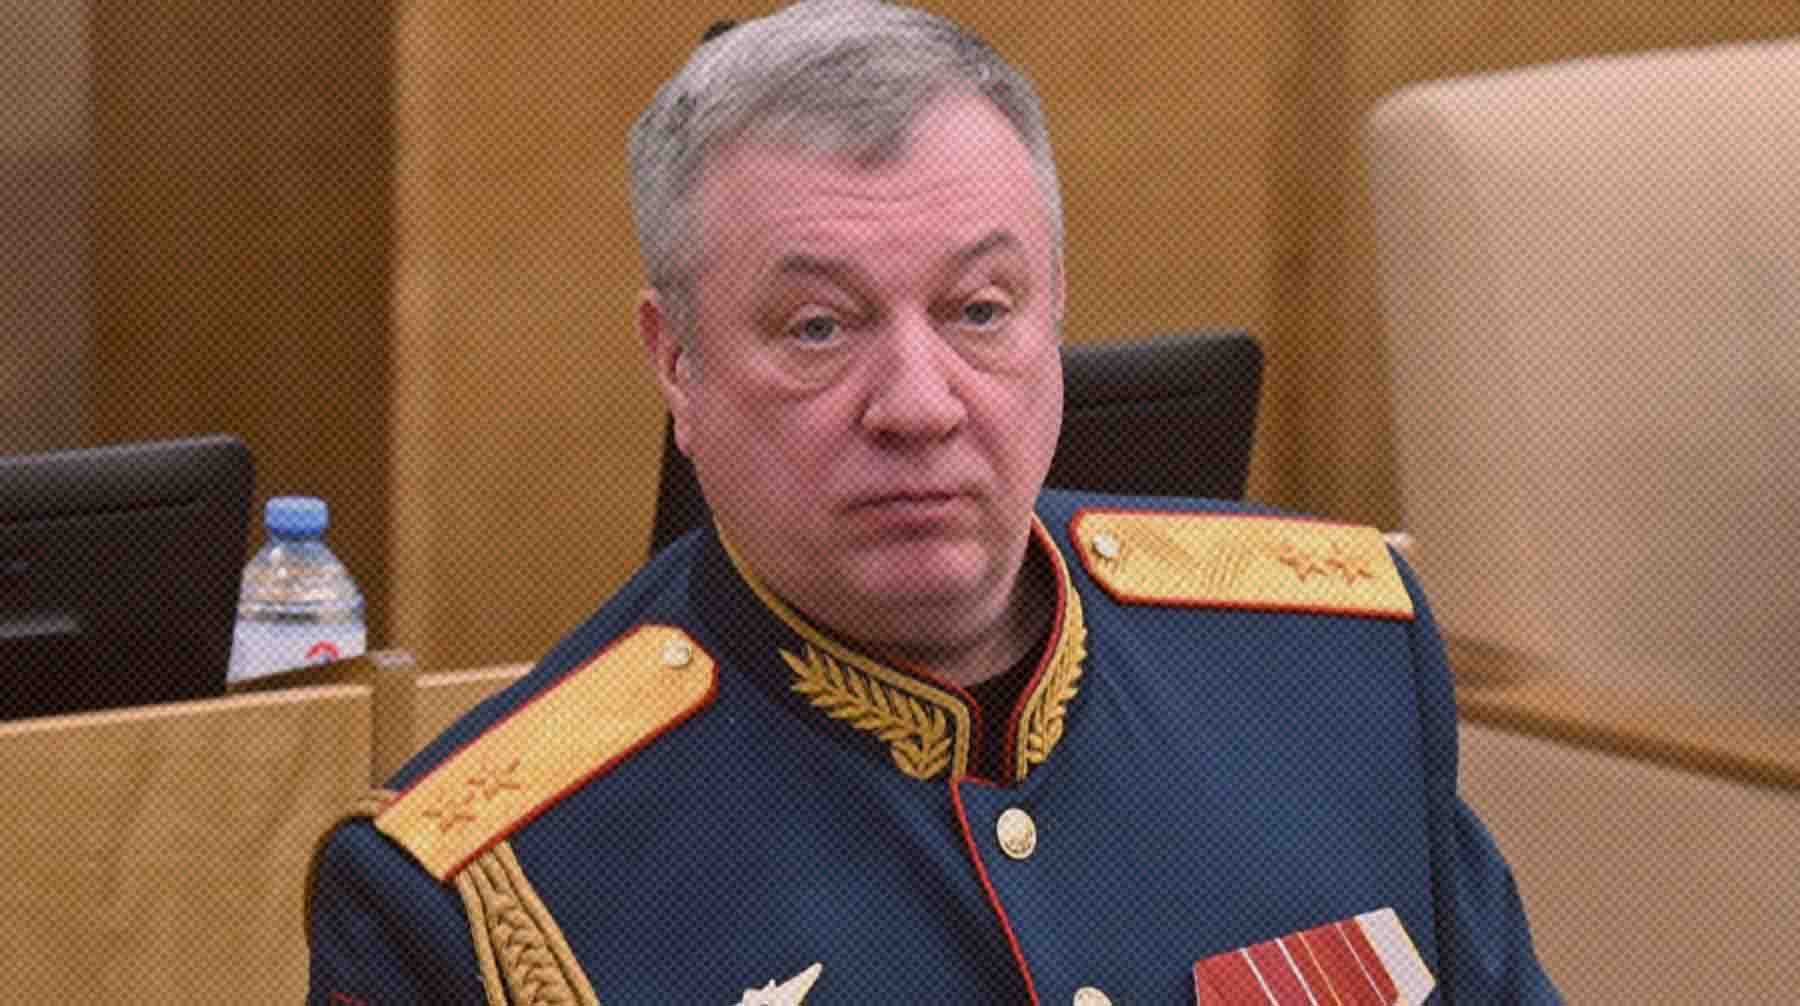 Ранее в думской комиссии заявили, что эти высказывания являются личным мнением парламентария Андрей Гурулев